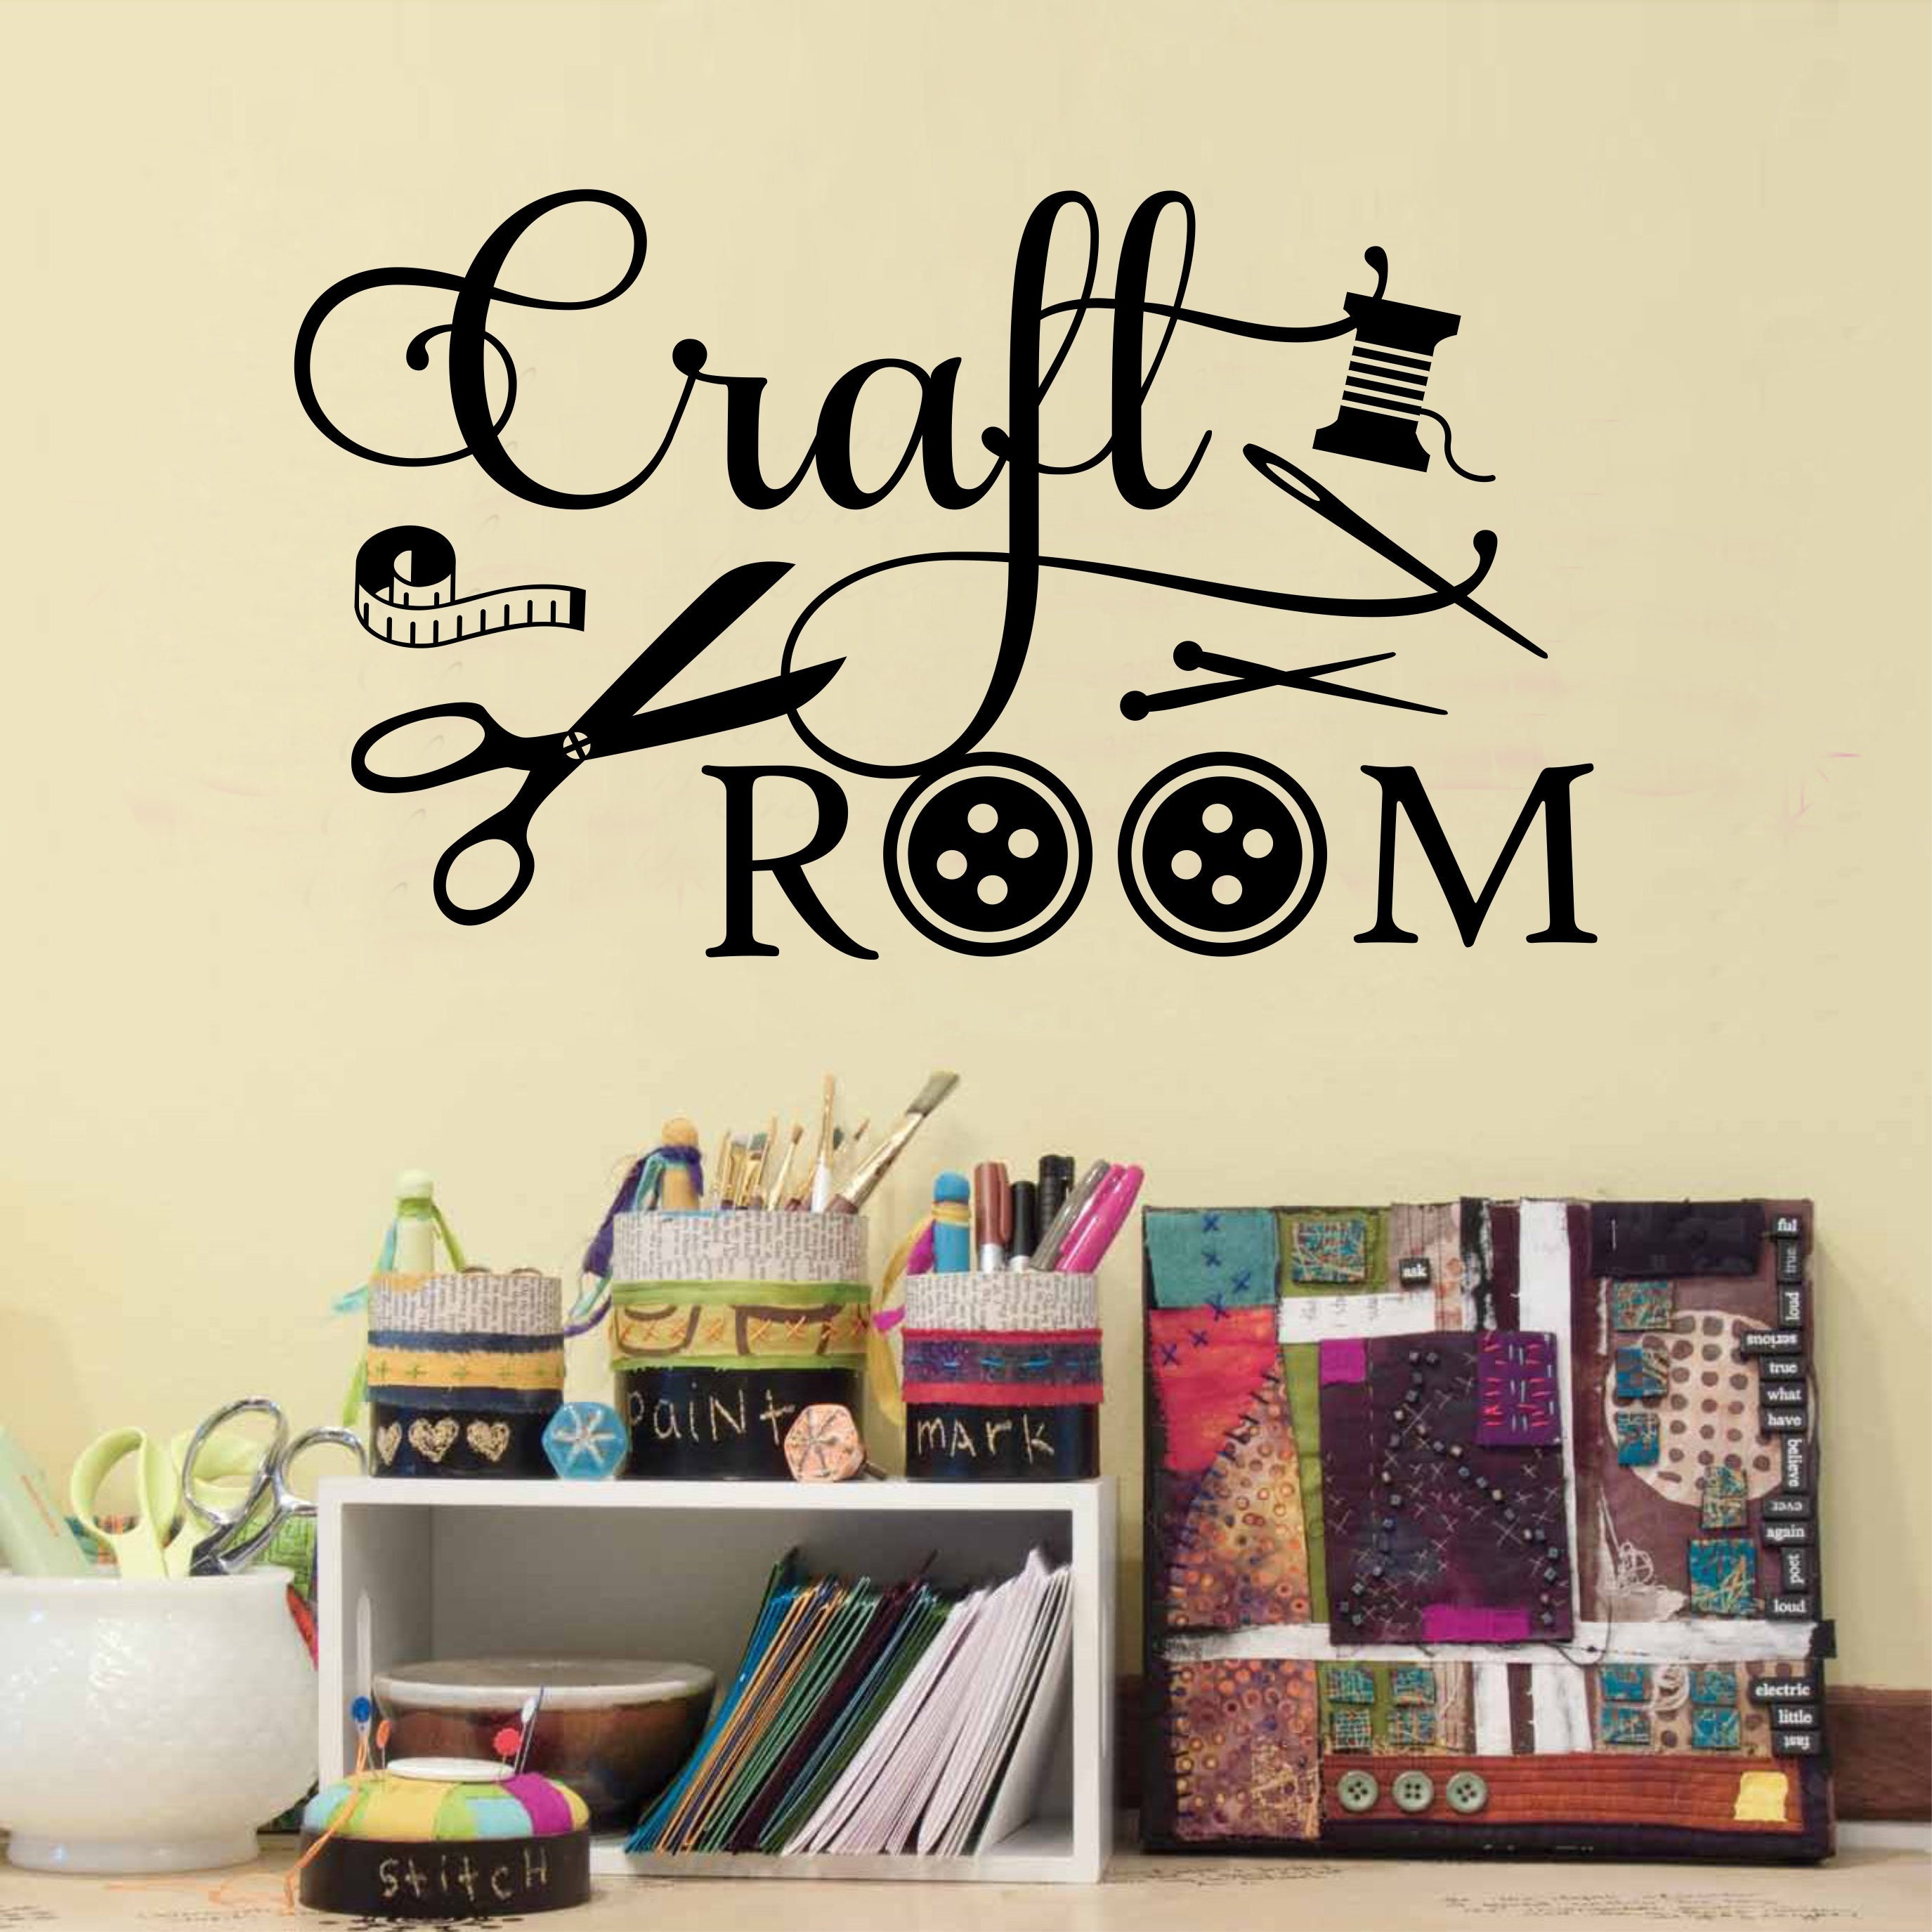 Craft Room Decor – The Happy Door